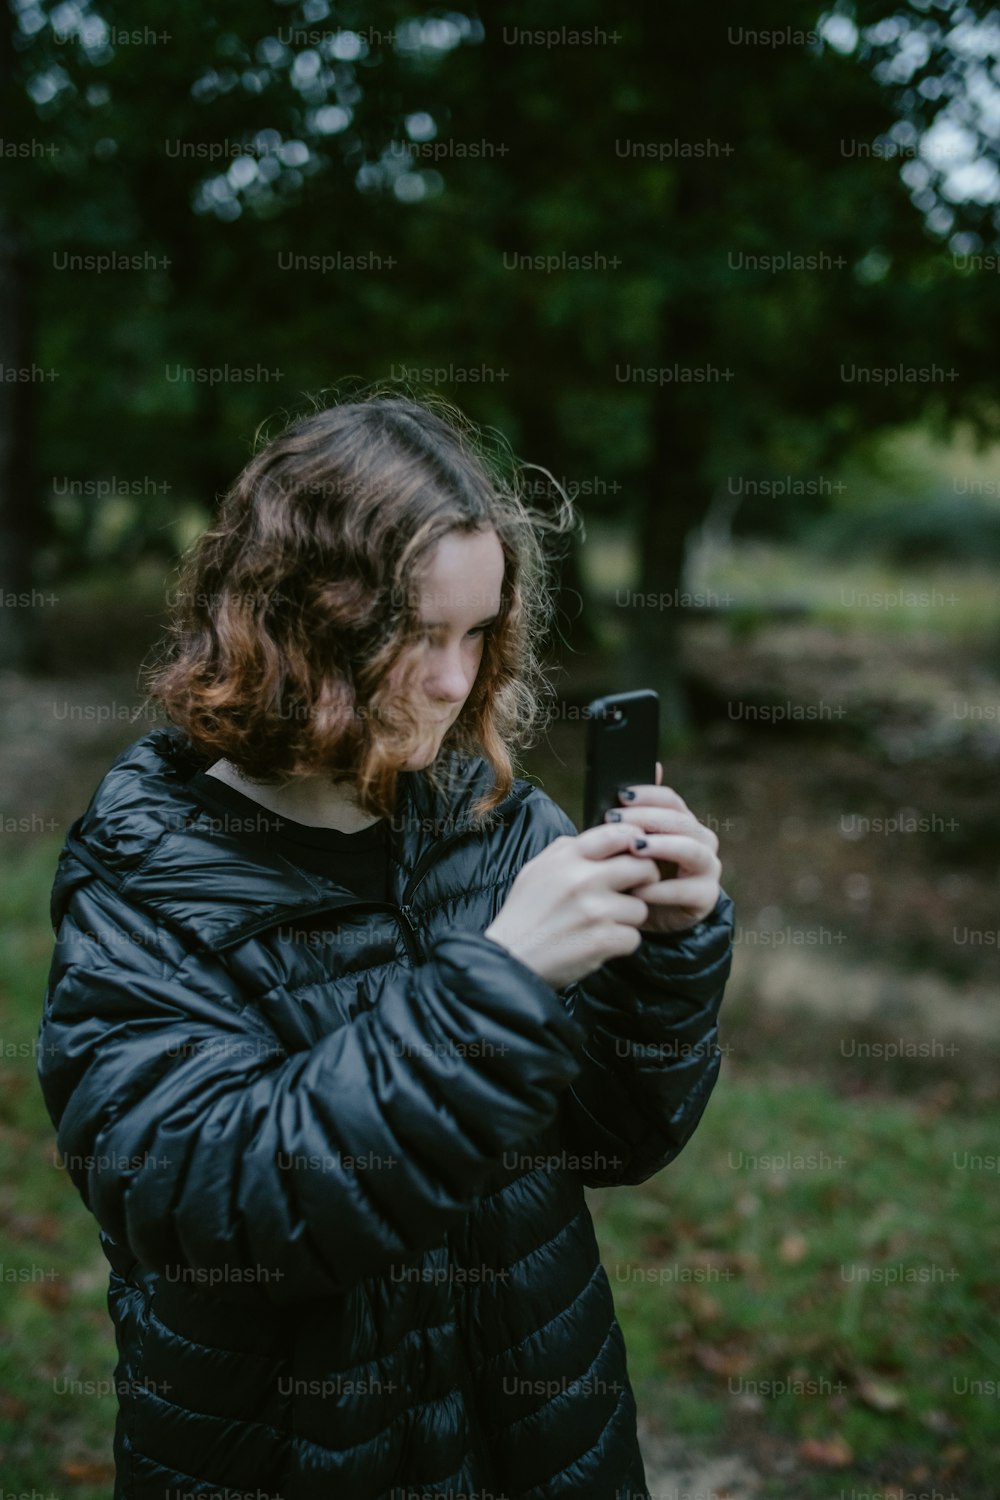 Eine Frau in einer schwarzen Jacke schaut auf ihr Handy